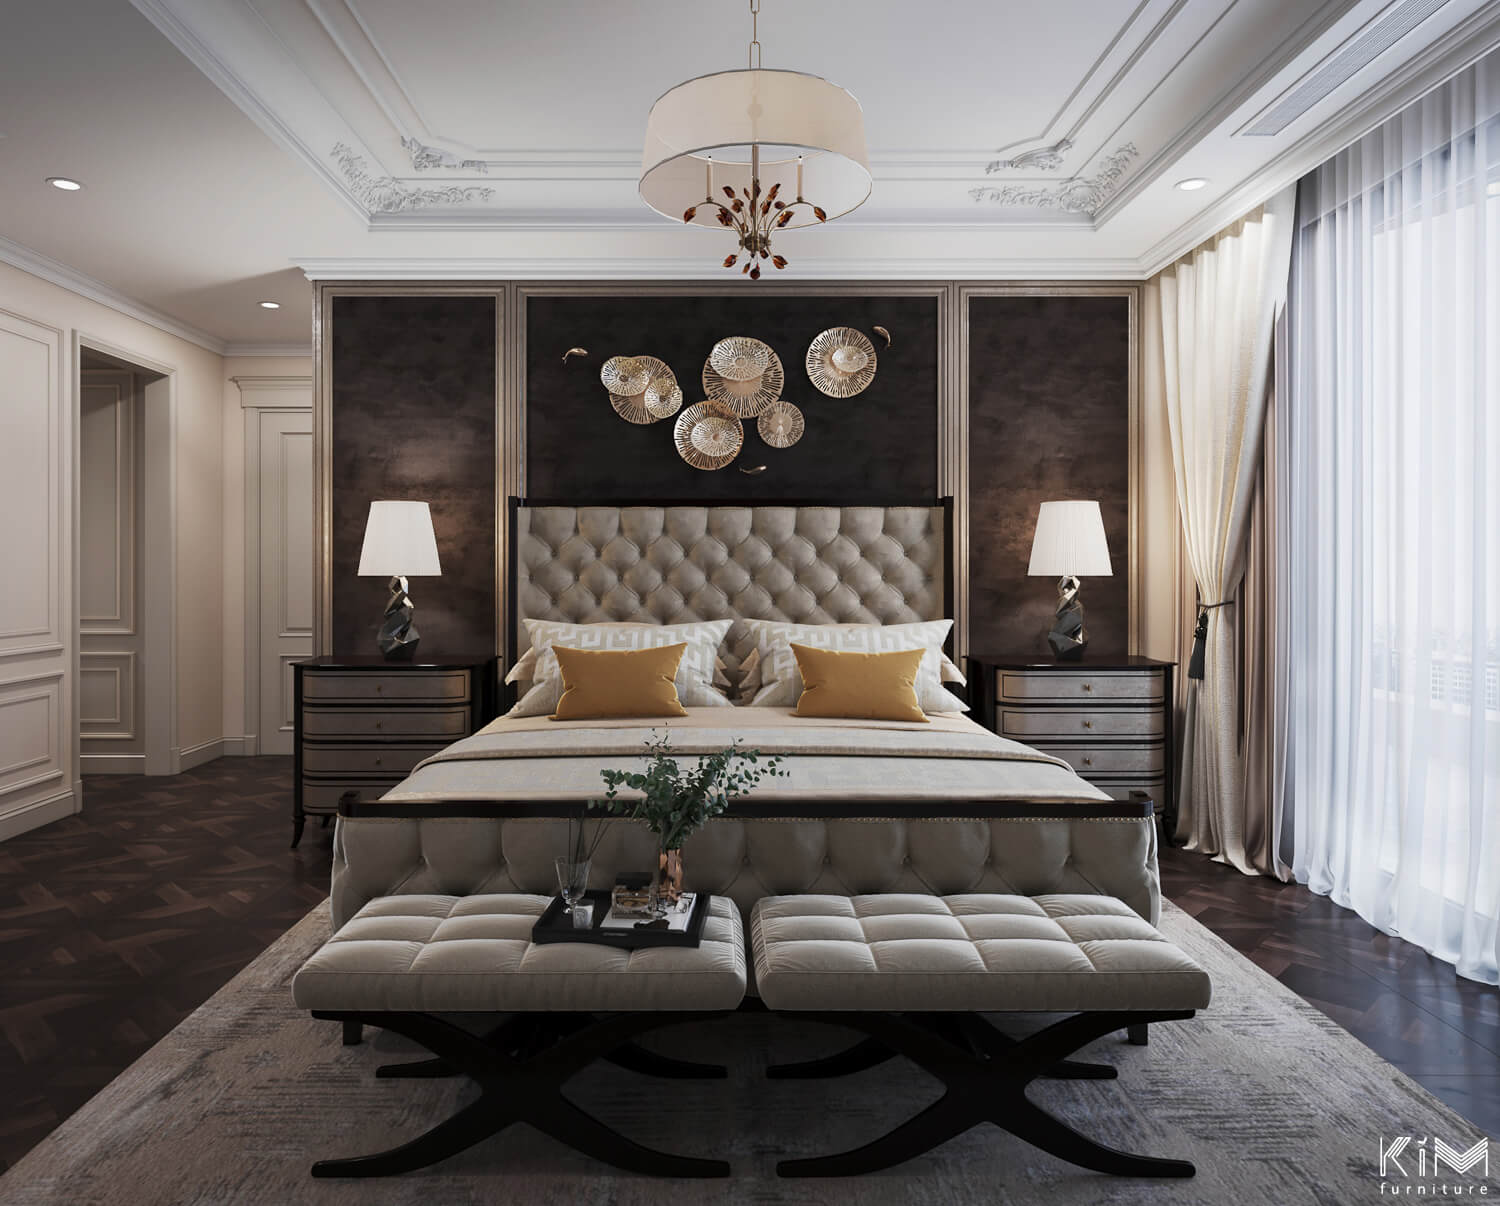 Mẫu trần nhà đẹp với phào chỉ đôi sử dụng trong thiết kế căn hộ Sun Grand City Thụy Khuê của KIM furniture